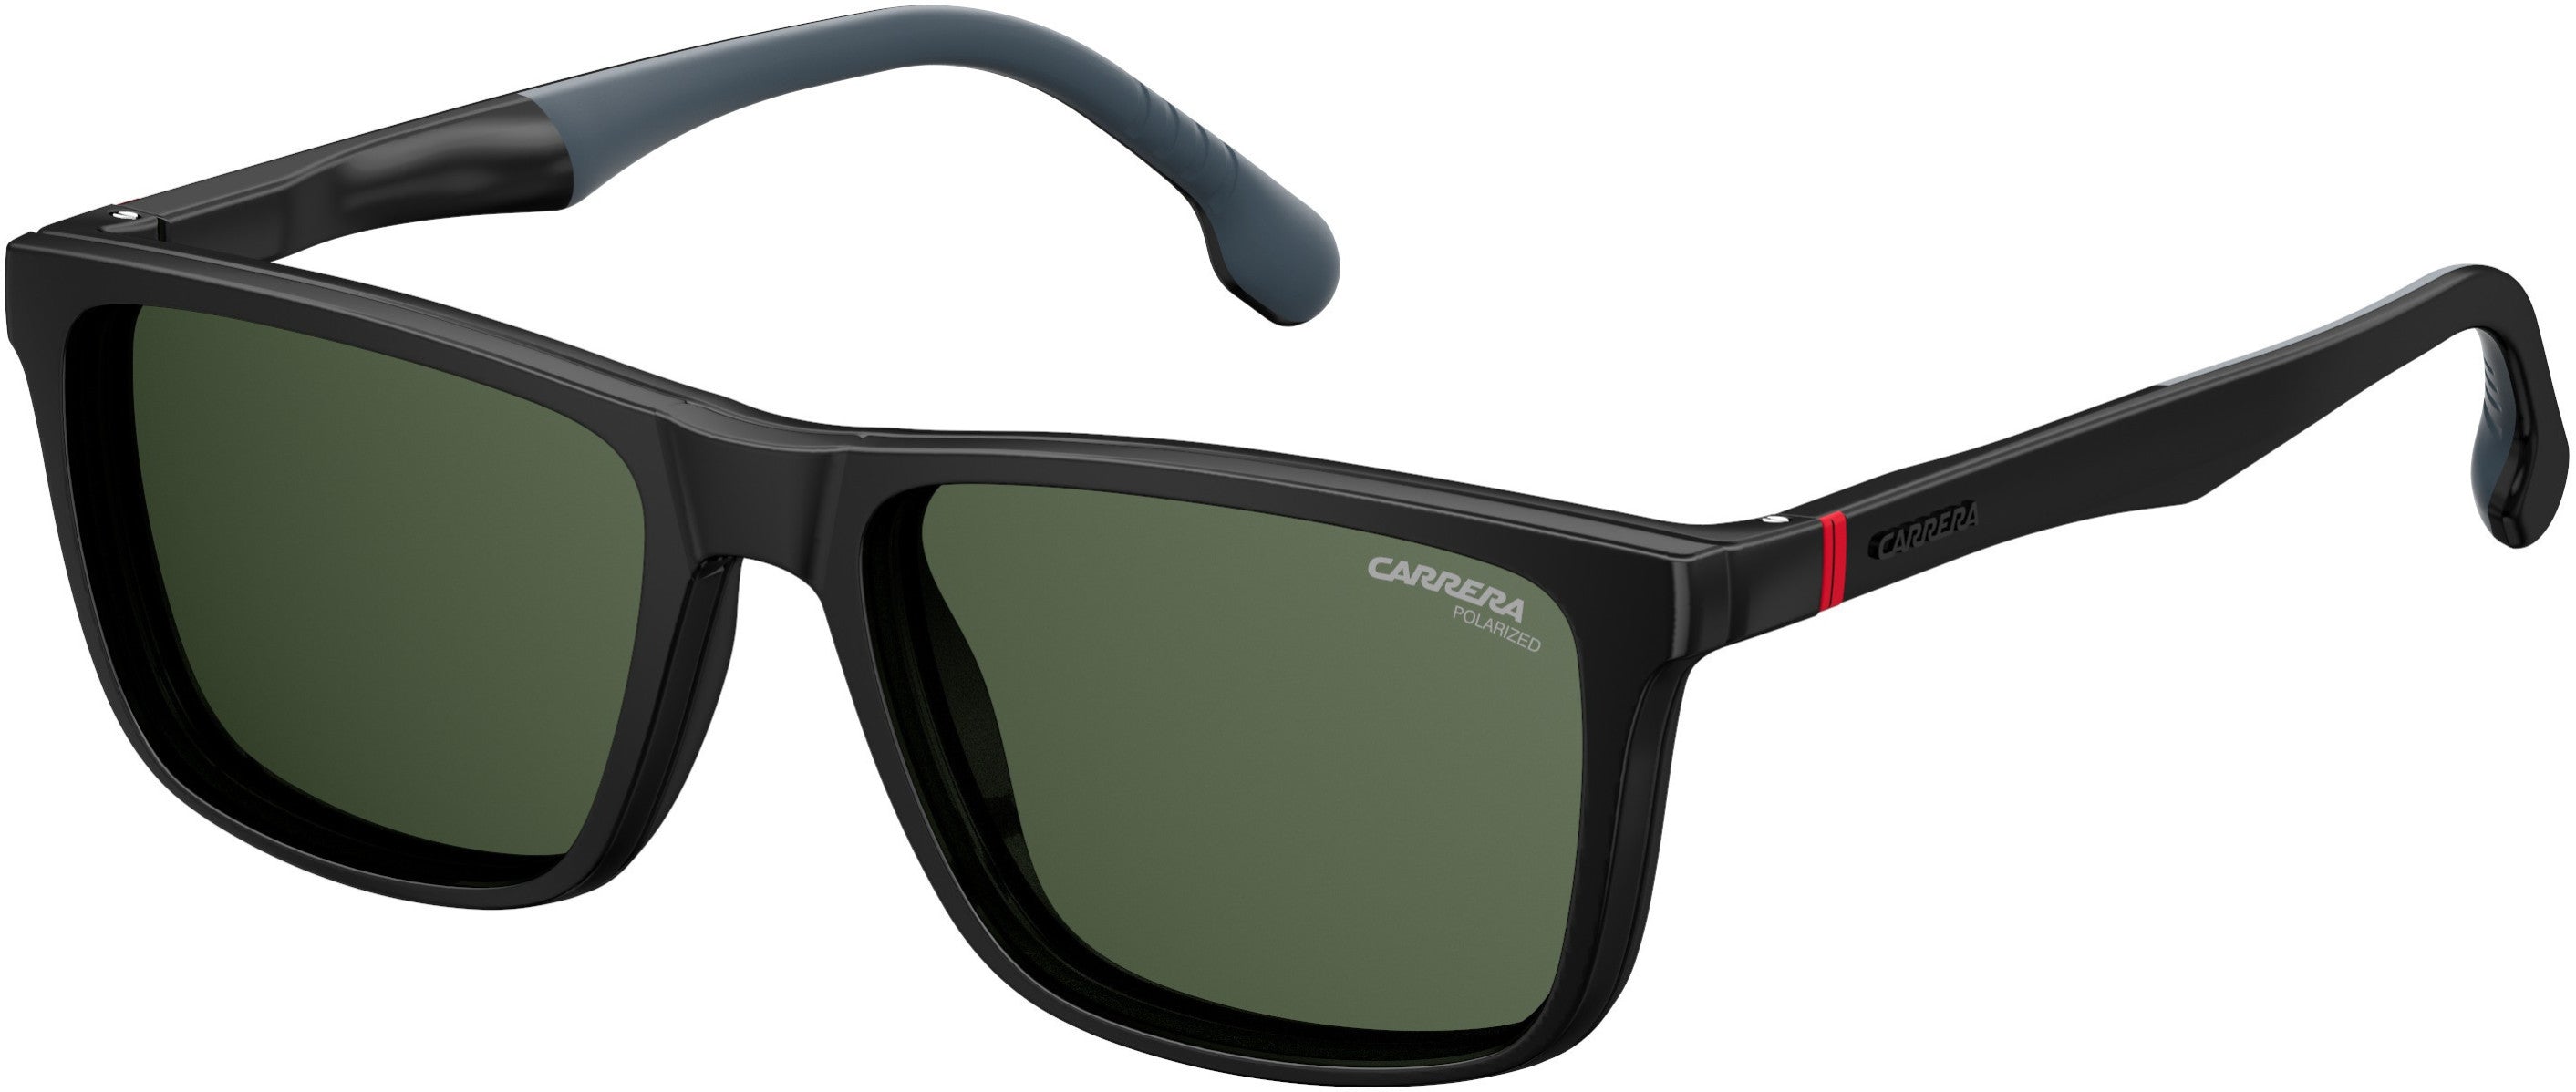 Carrera 4009/cs Rectangular Sunglasses For Man | AllureAid.com ...